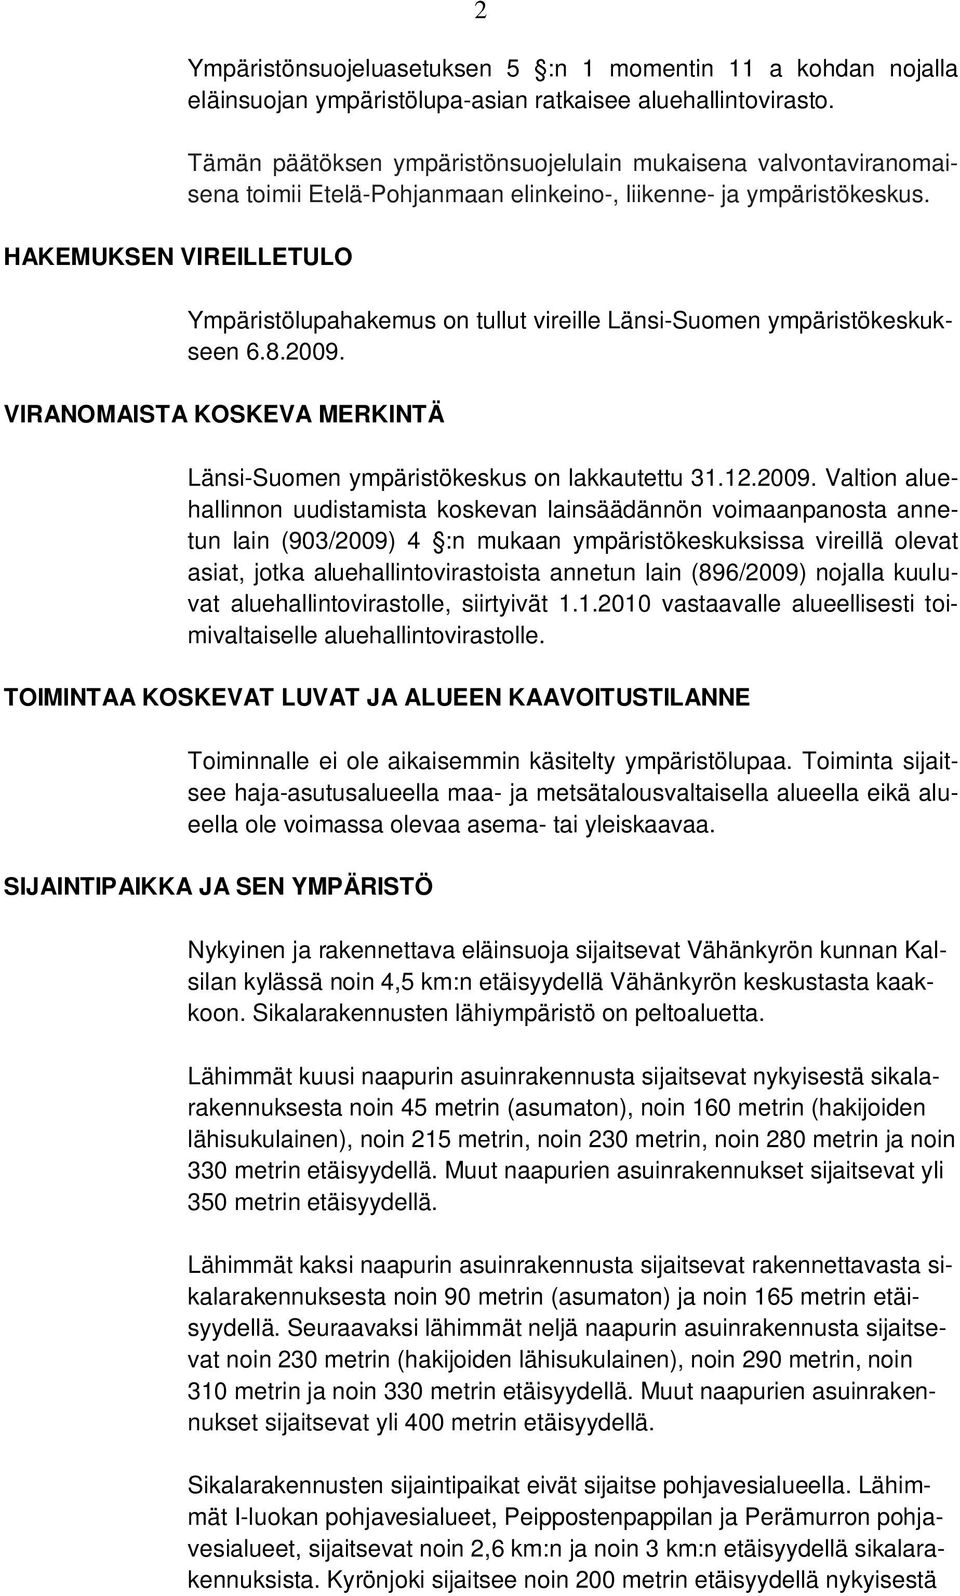 Ympäristölupahakemus on tullut vireille Länsi-Suomen ympäristökeskukseen 6.8.2009.